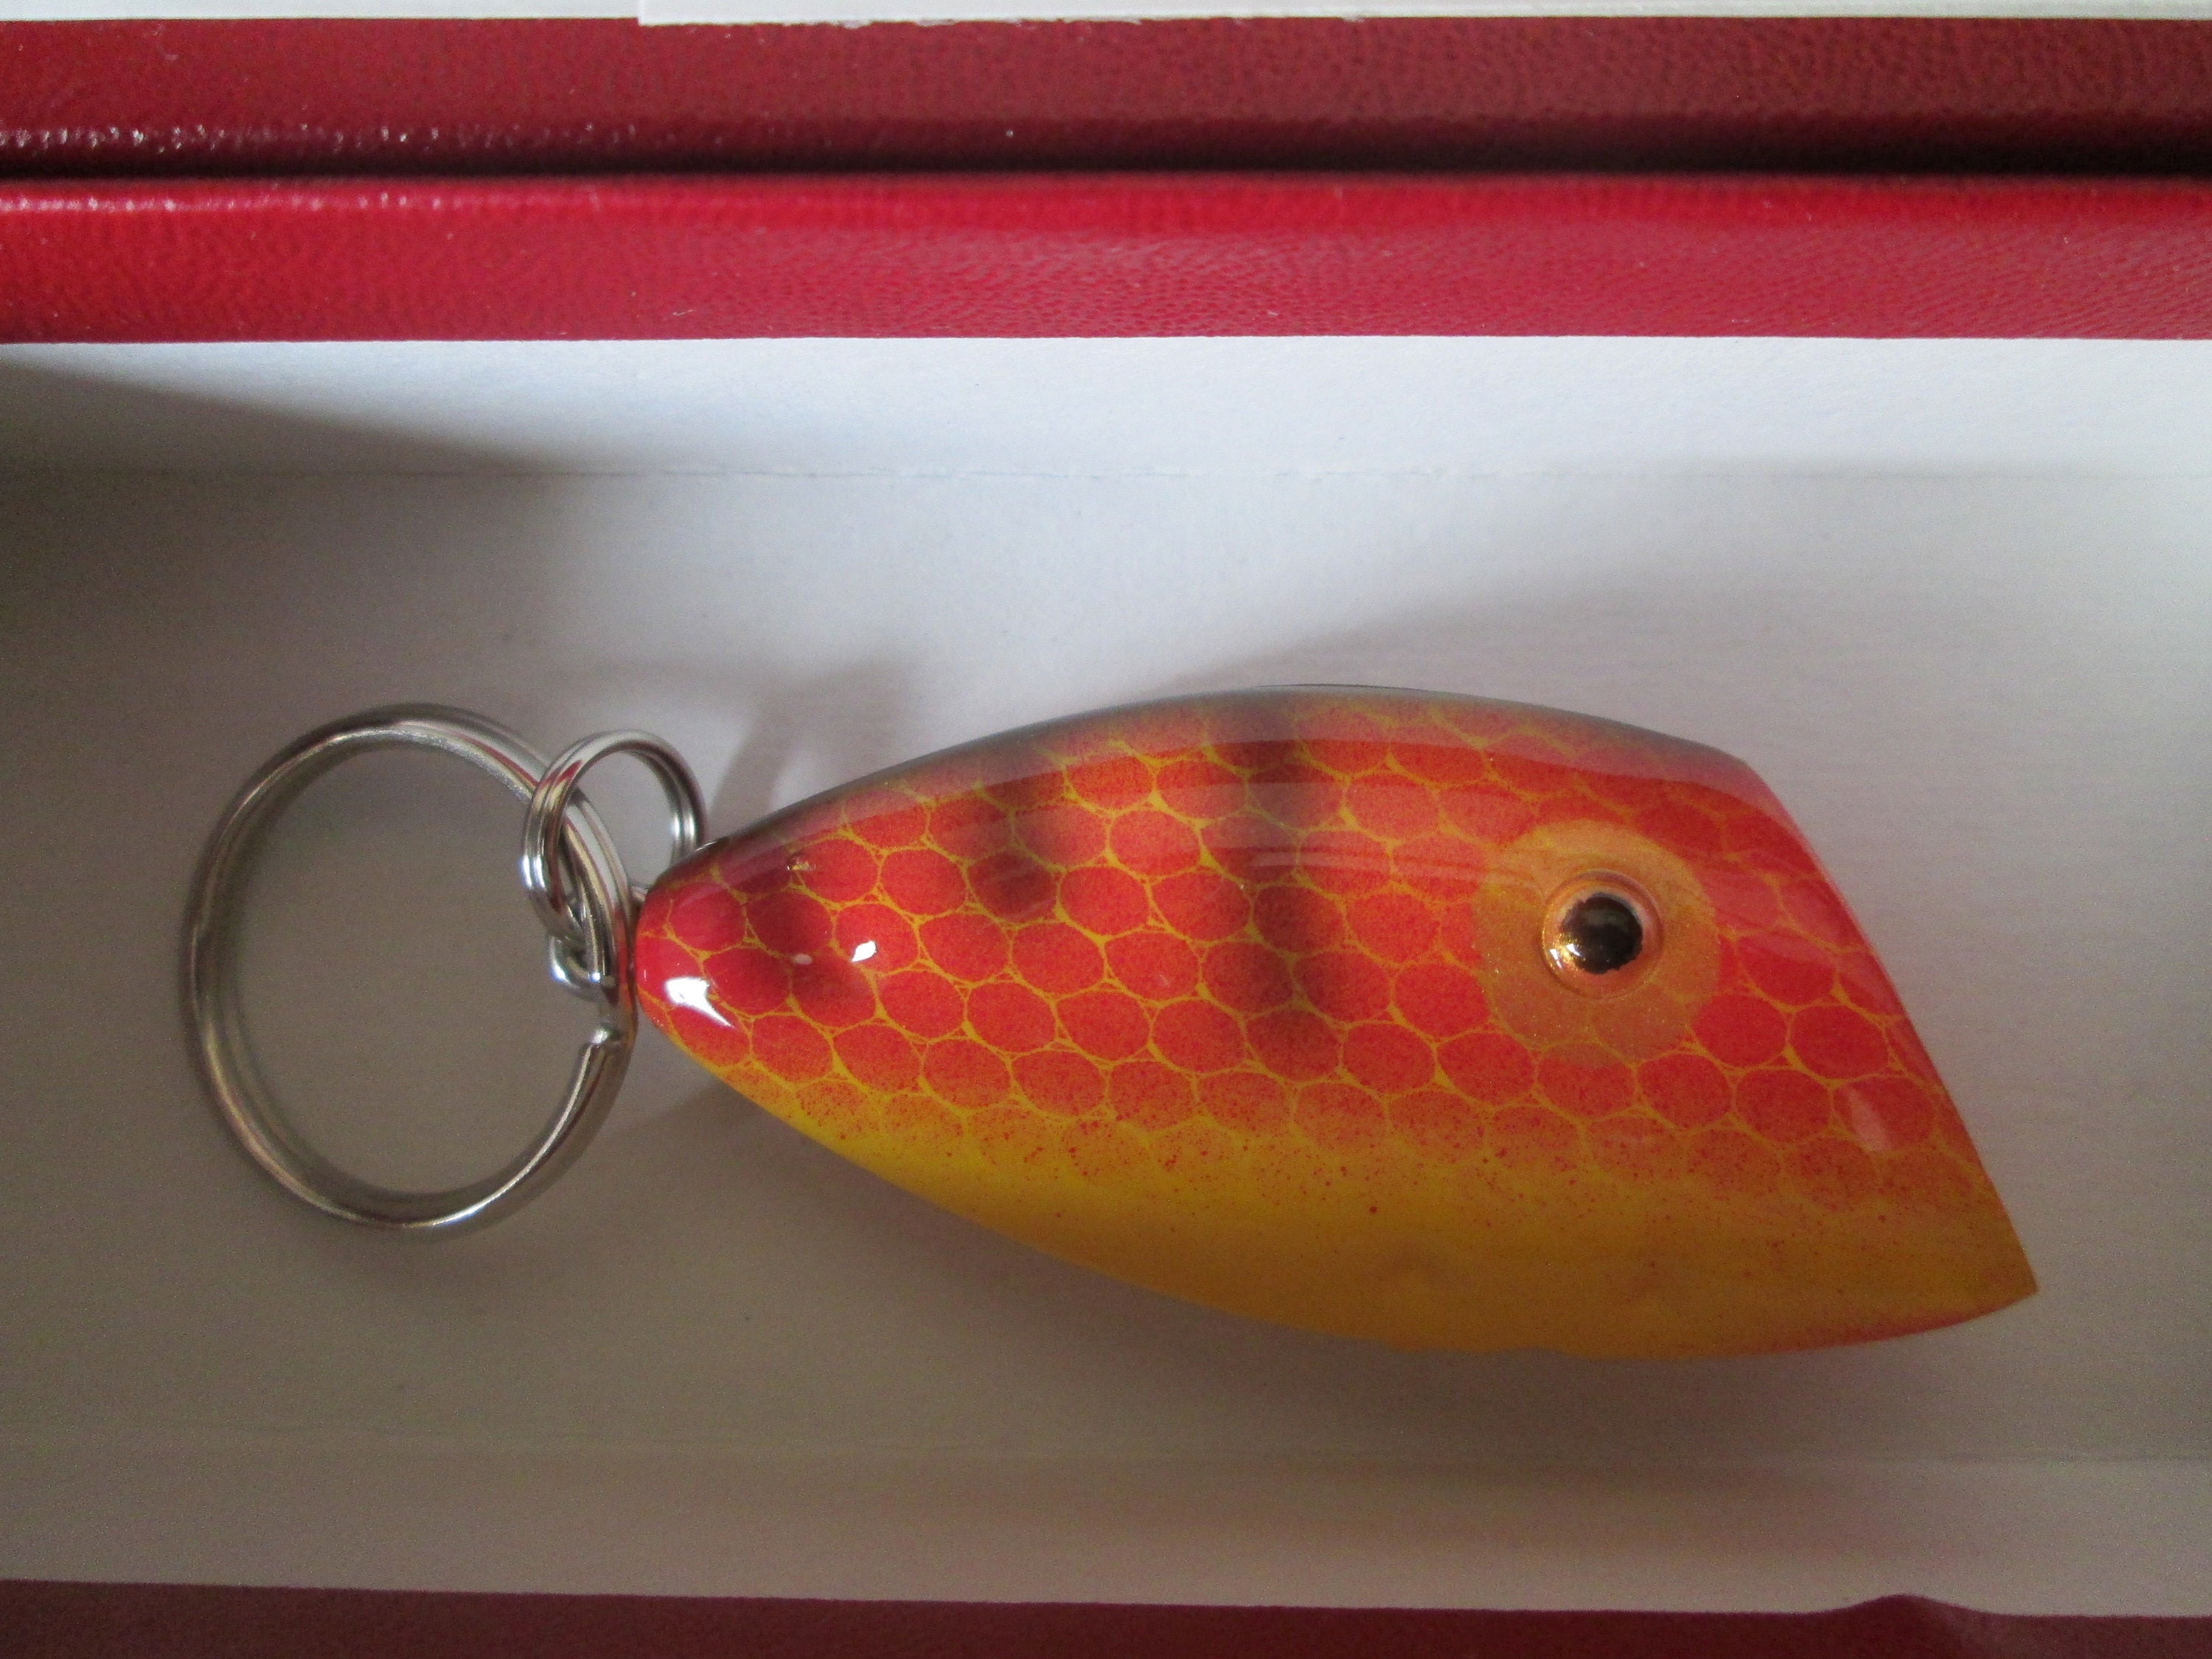 Pico Fishing Lure Keychain Orange in Box 